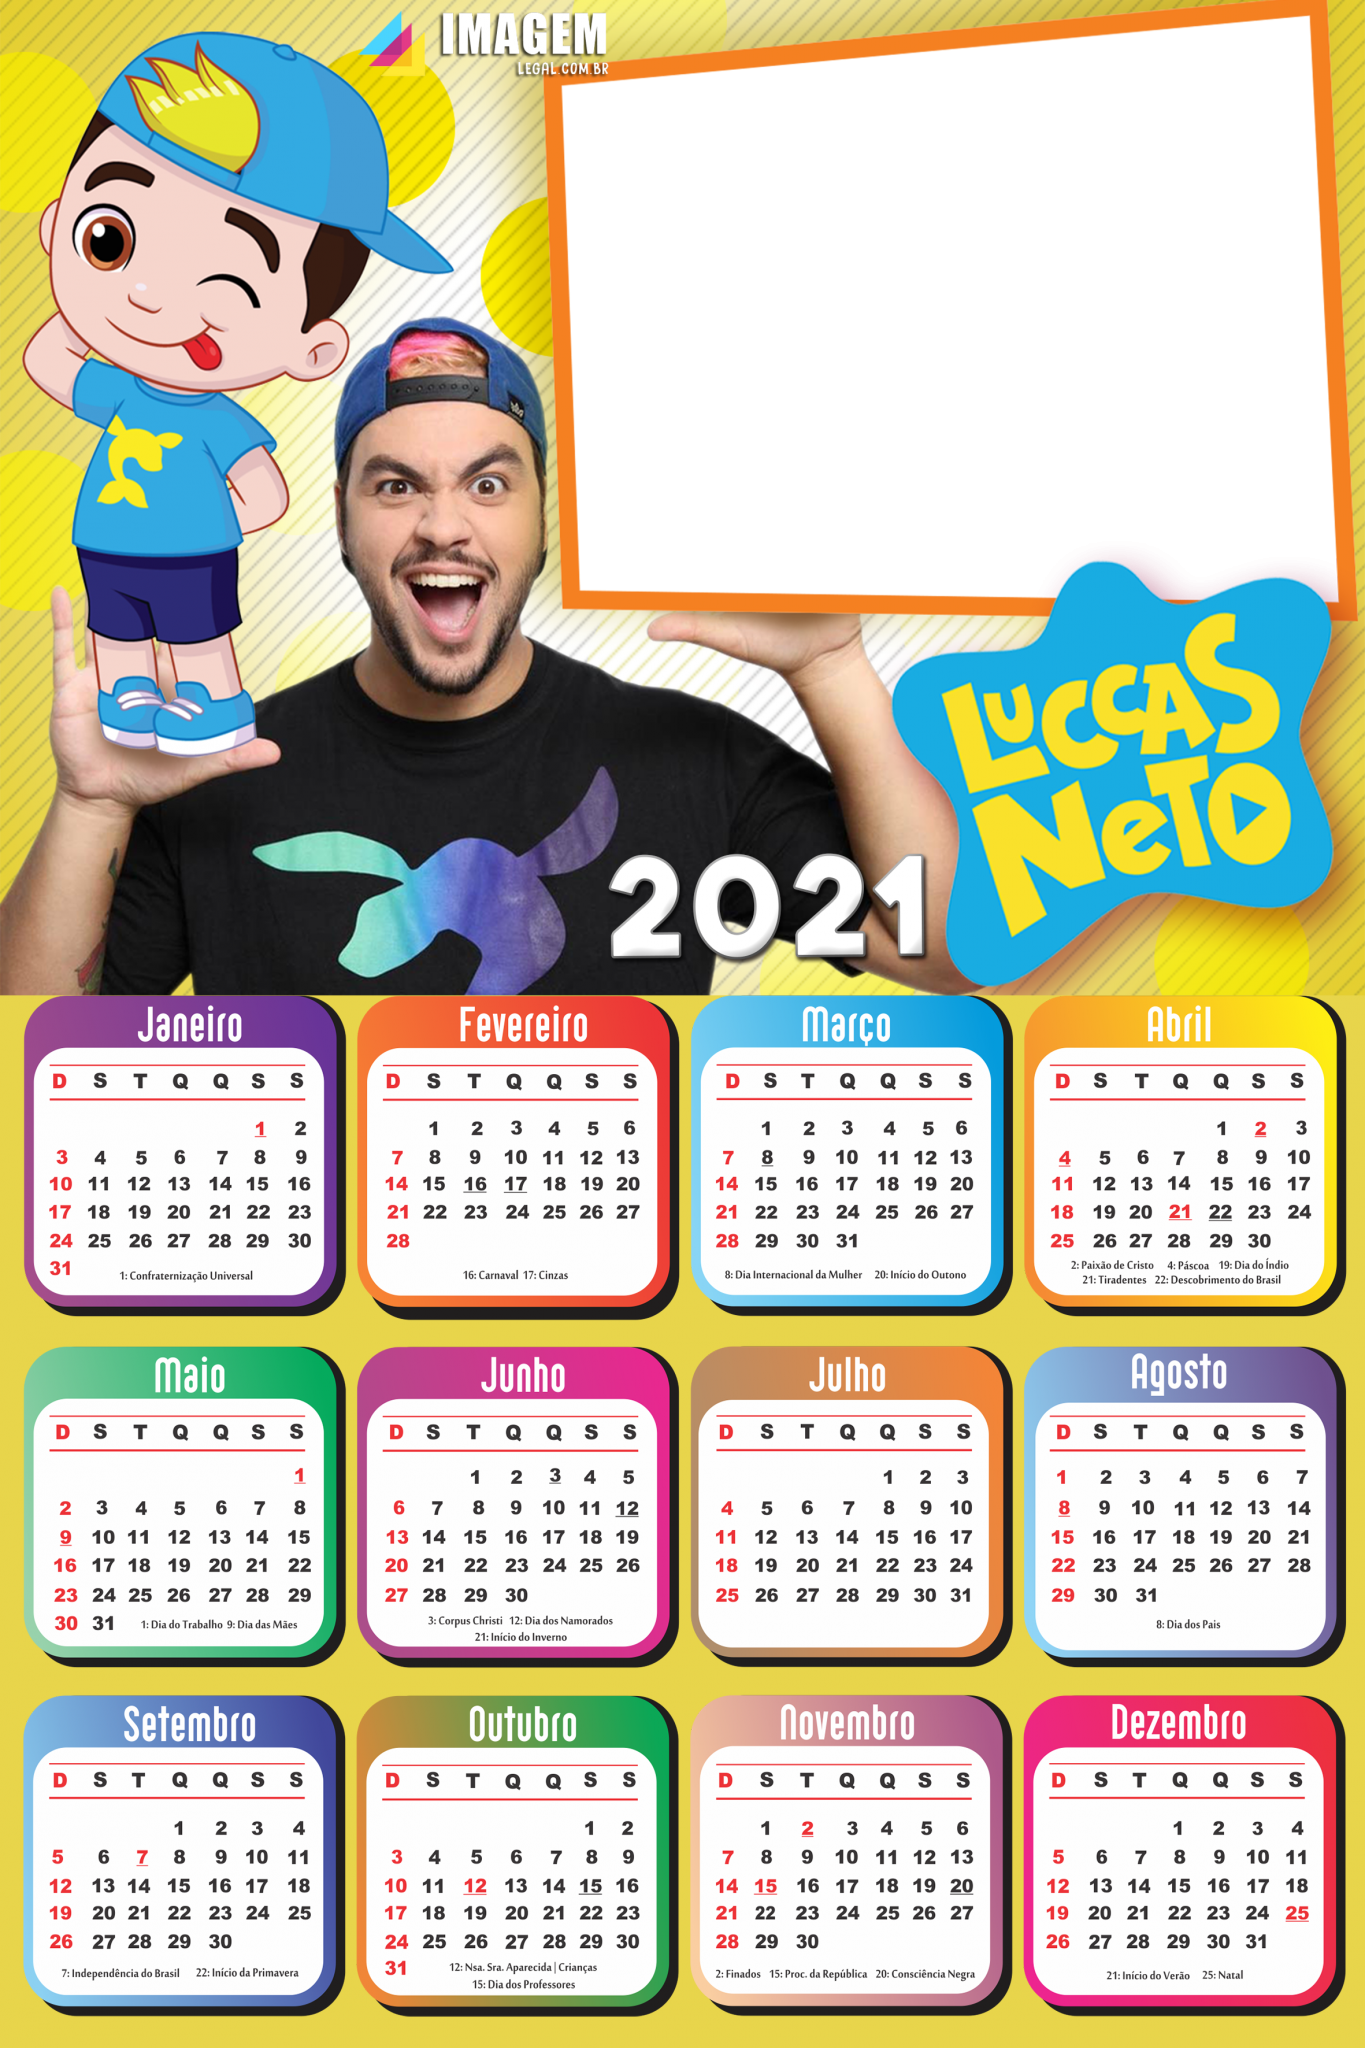 Calendário 2021 Luccas Neto e Giovanna PNG - Imagem Legal